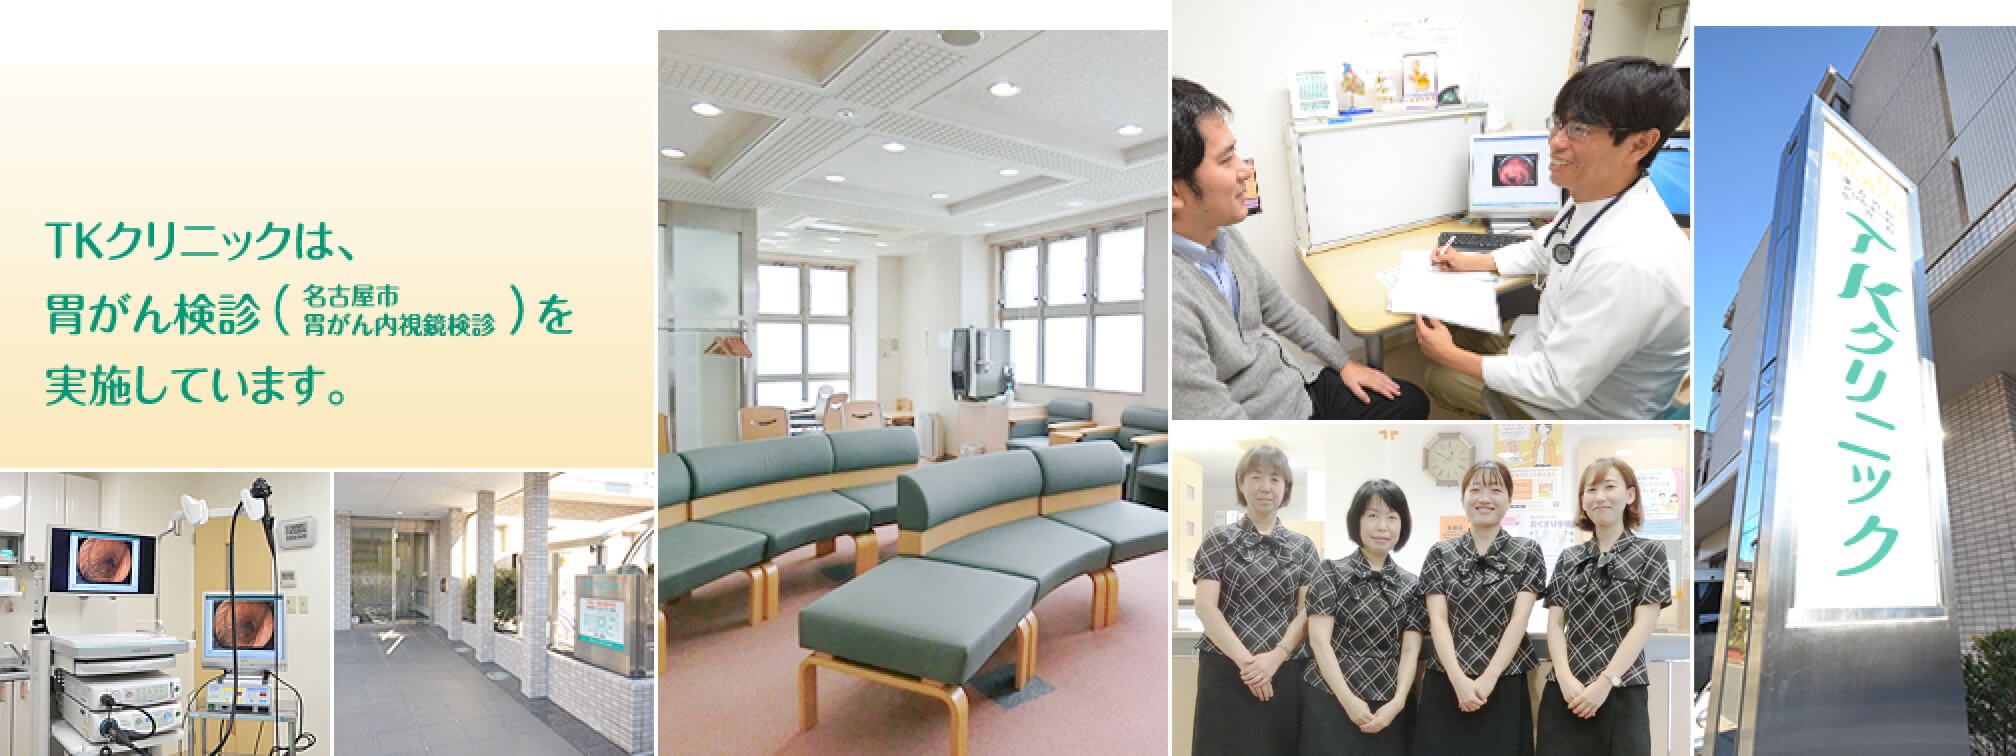 TKクリニックは、胃がん検診（名古屋市胃がん内視鏡検診）を実施しています。